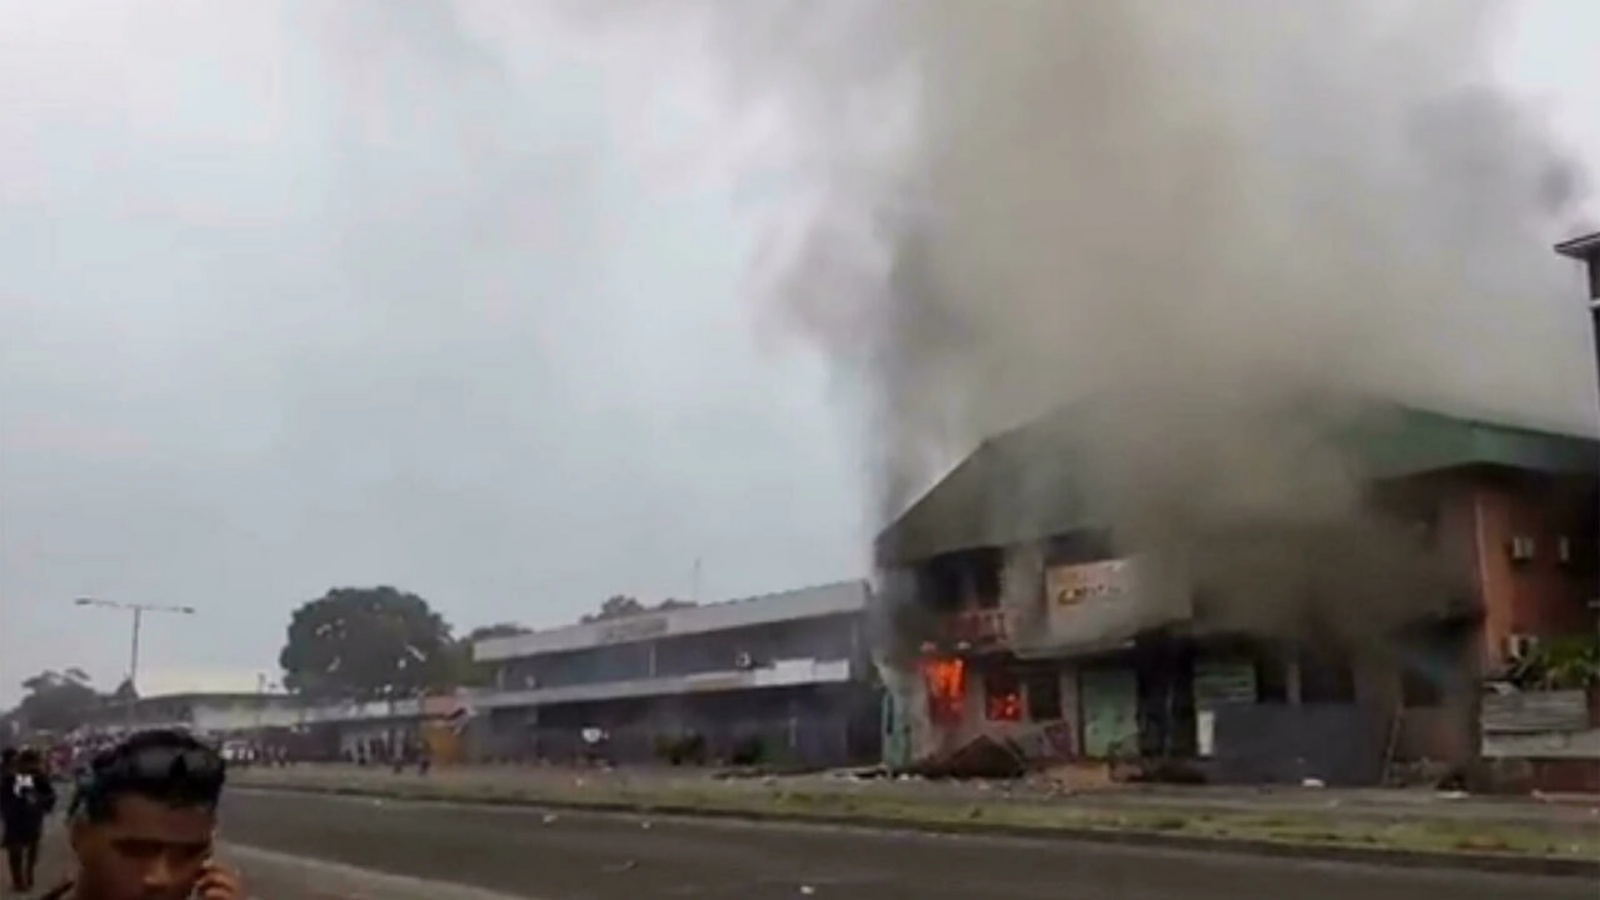 النيران أُشعلت في المباني ونهبت المتاجر بالتزامن مع نشر أستراليا قوة لحفظ السلام في هونيارا. الخميس 25 تشرين الثاني/نوفمبر 2021.